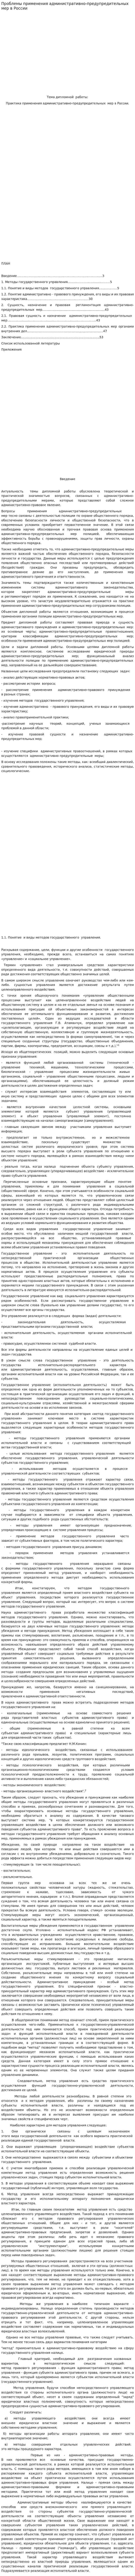 Проблемы применения административно-предупредительных мер в России